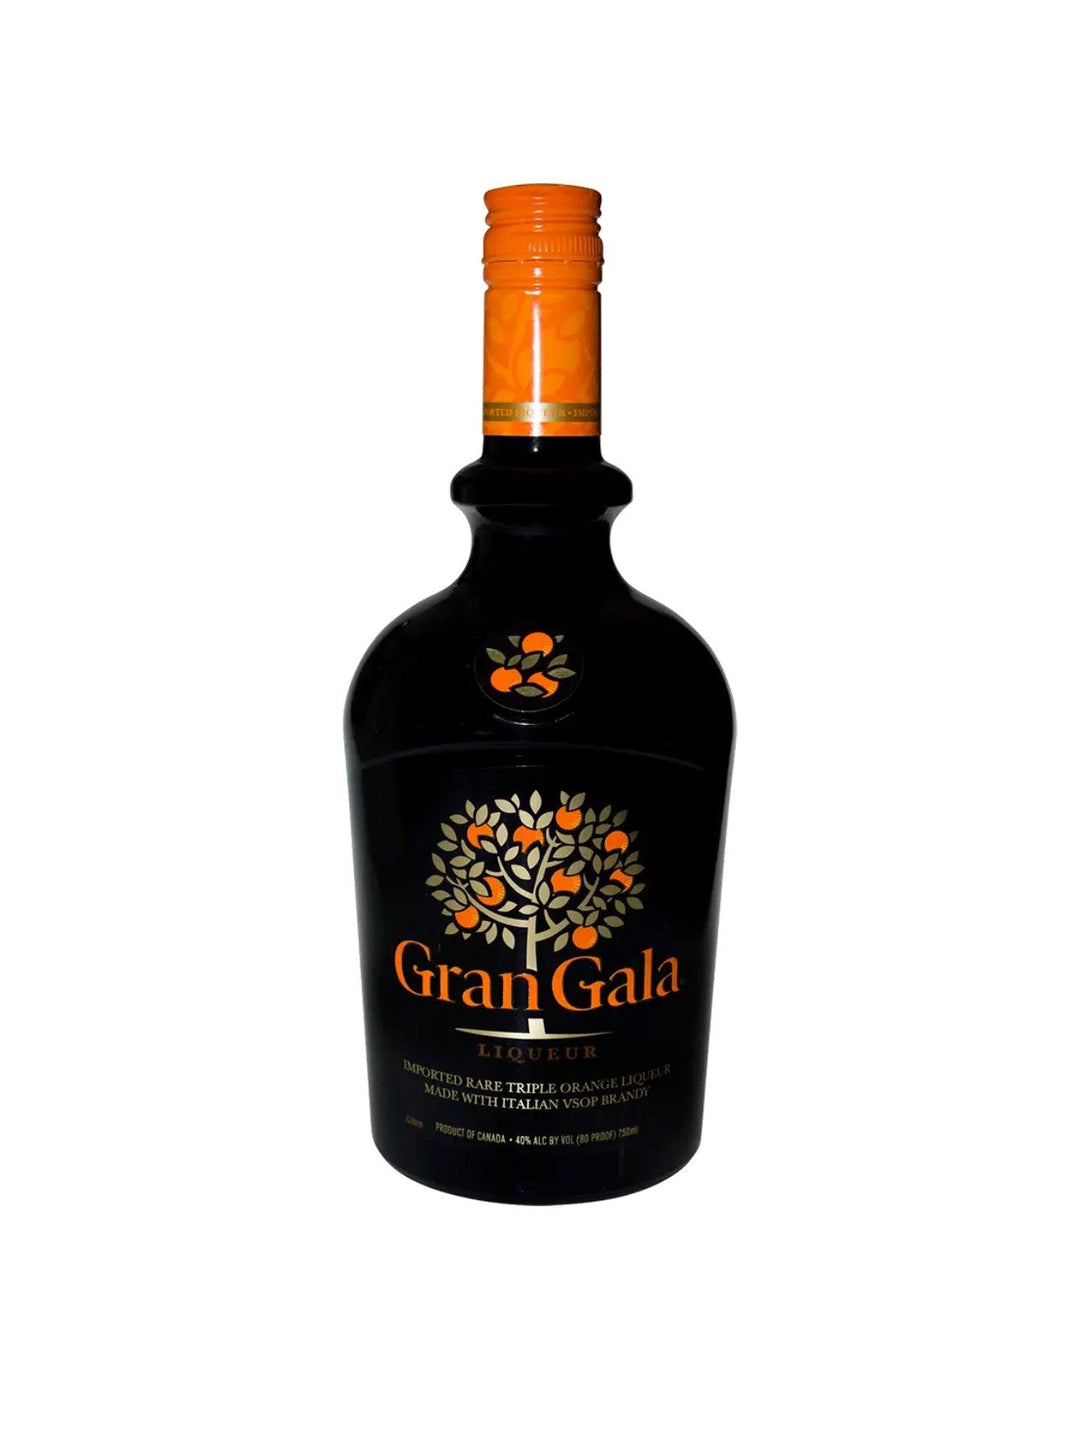 Gran Gala Liqueur - Liquor Luxe